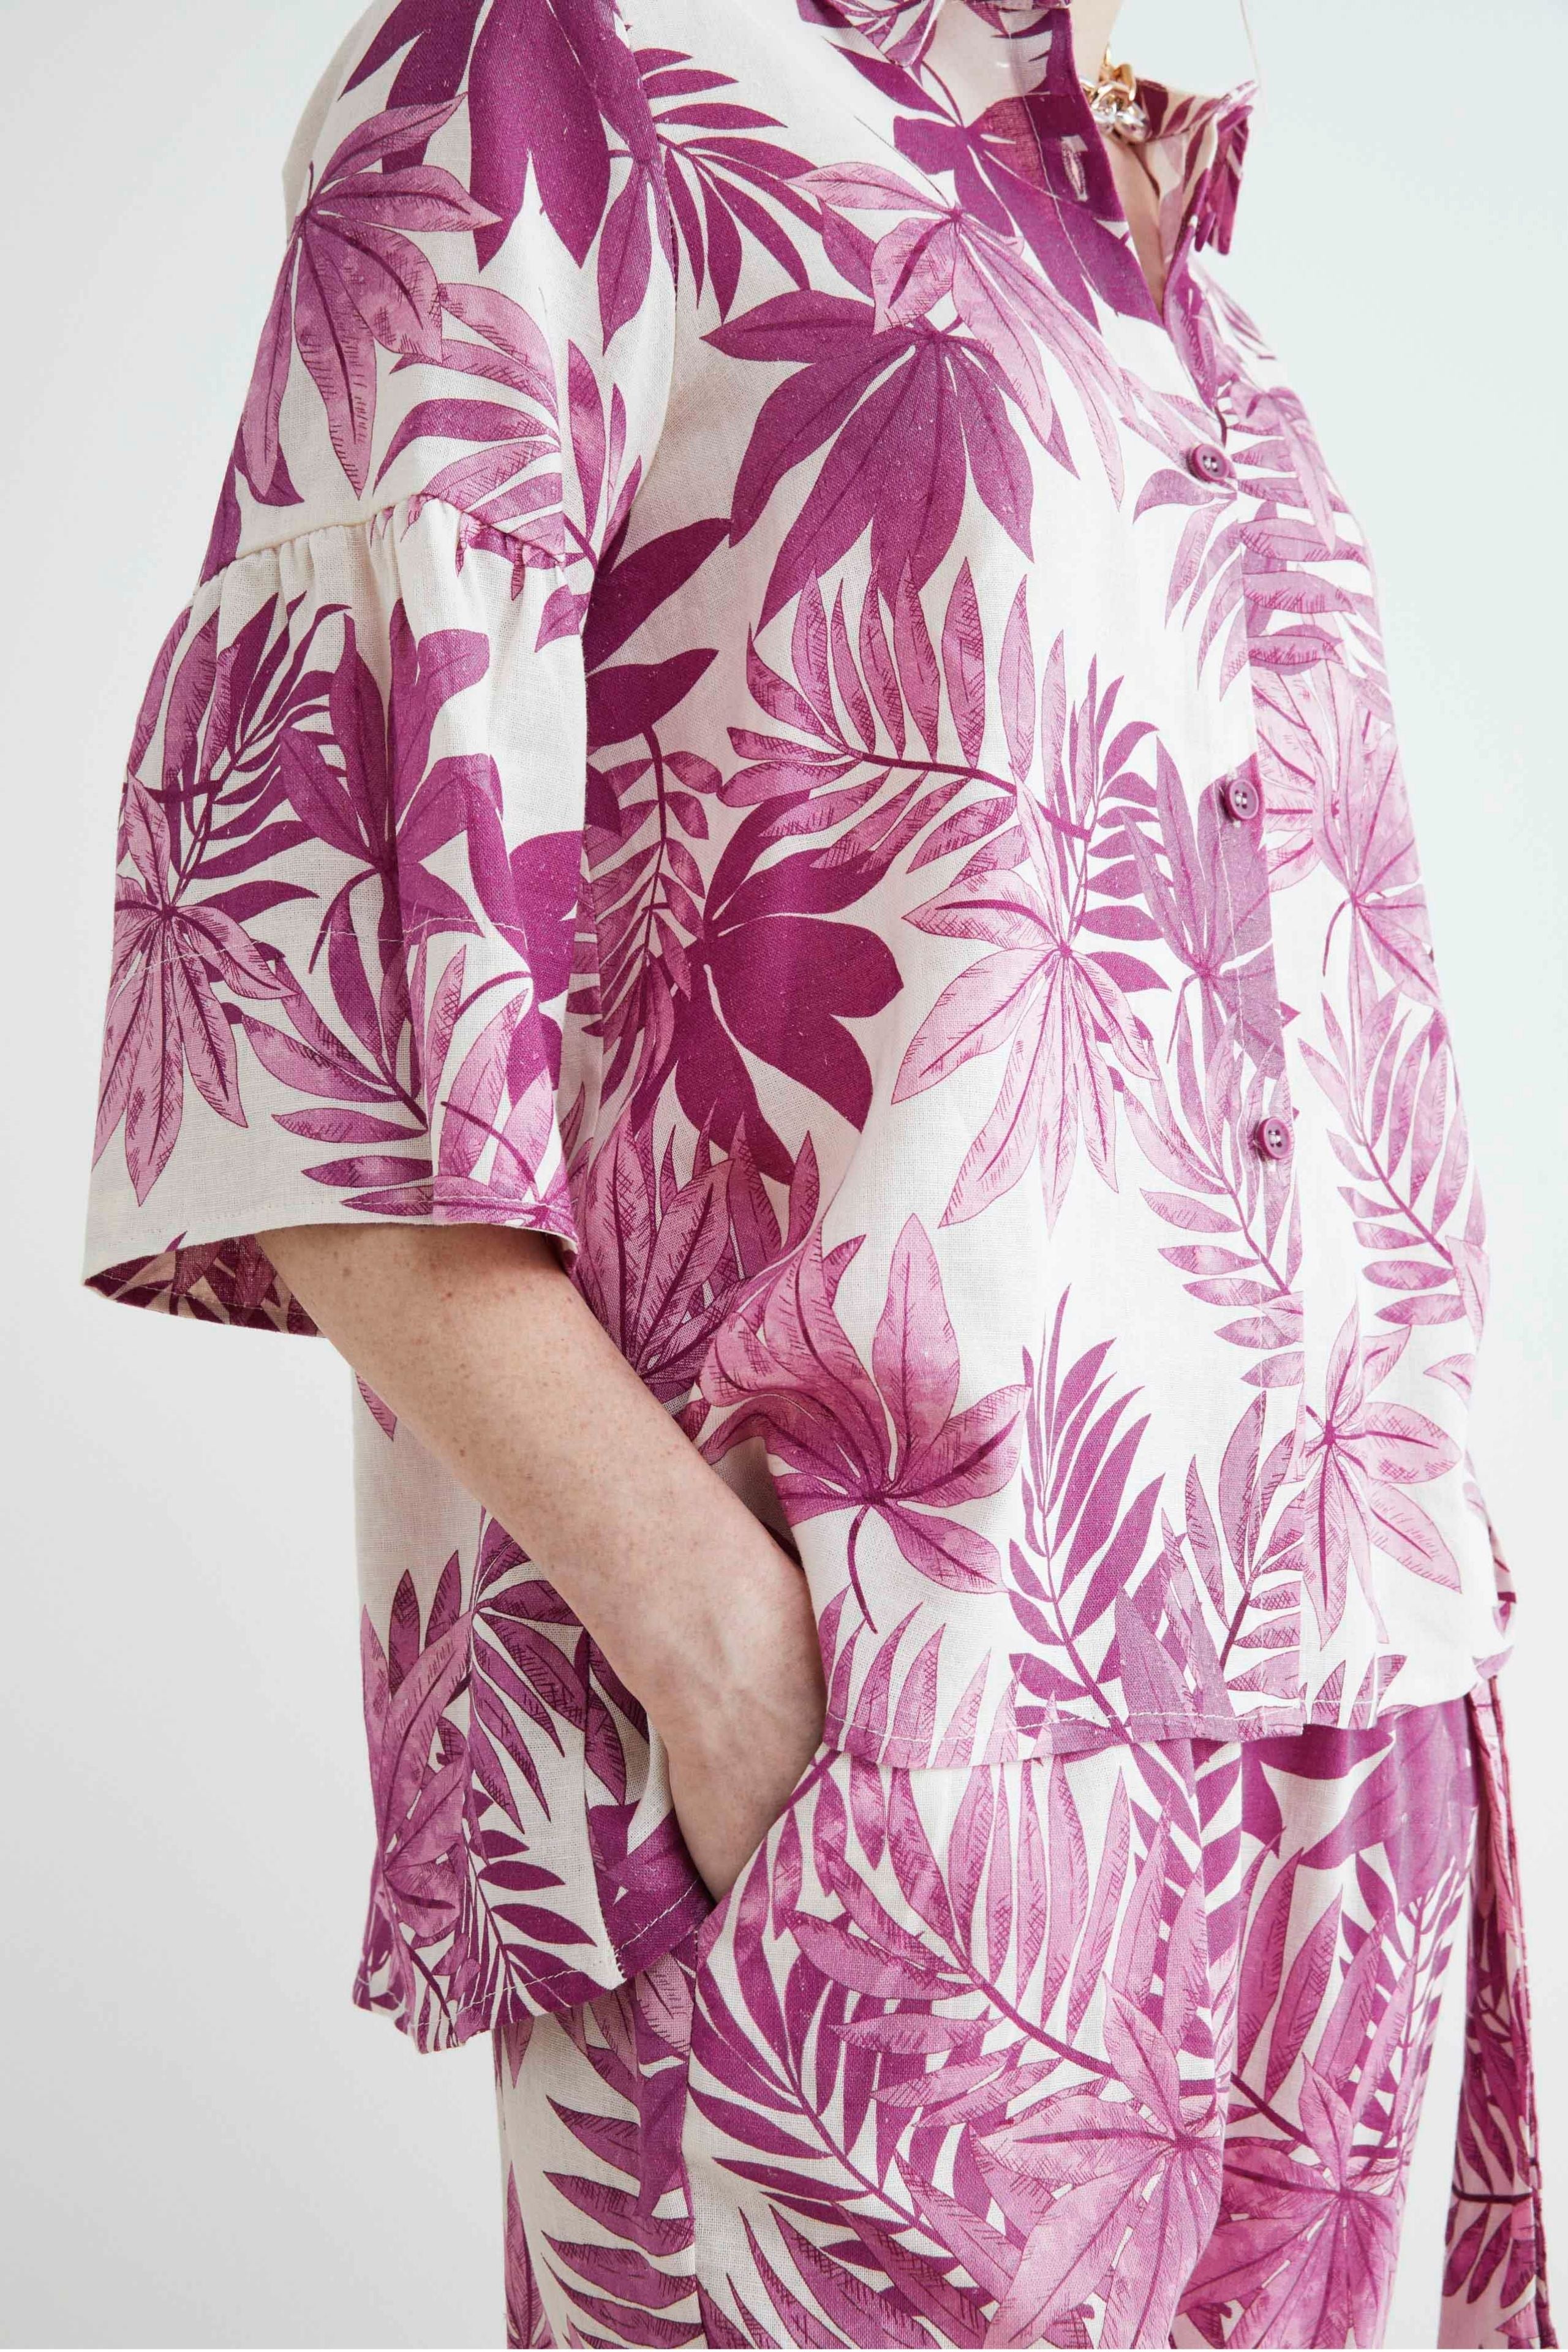 Soft linen shirt - Azalea pattern